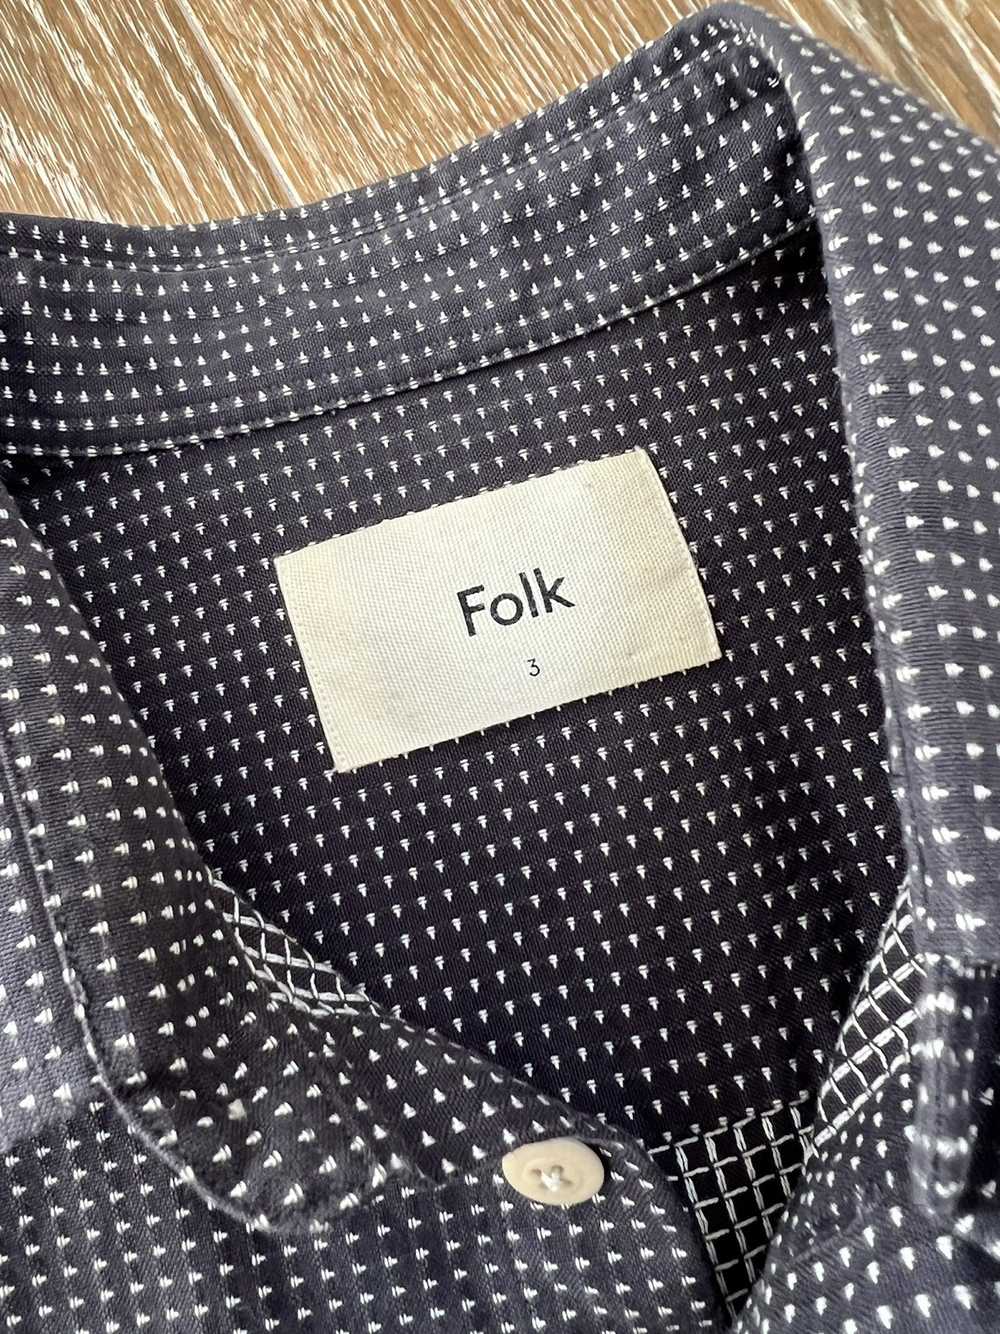 Folk Folk button up shirt - image 3